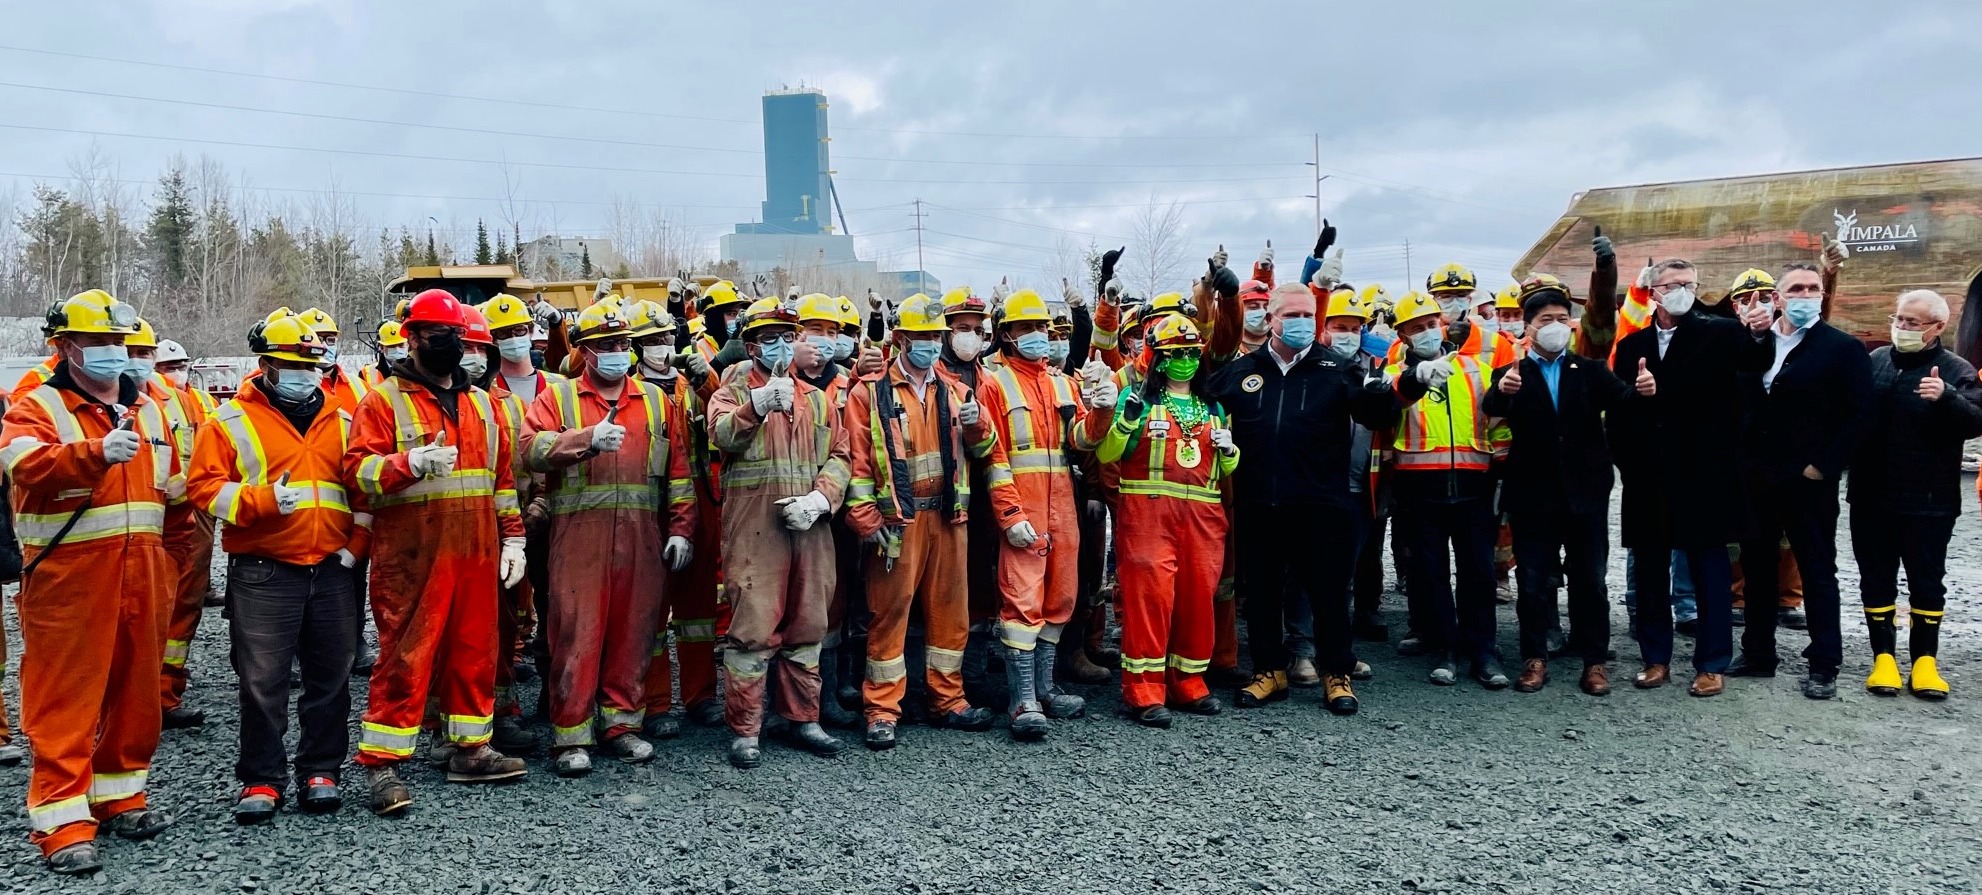 miners at Impala Canada